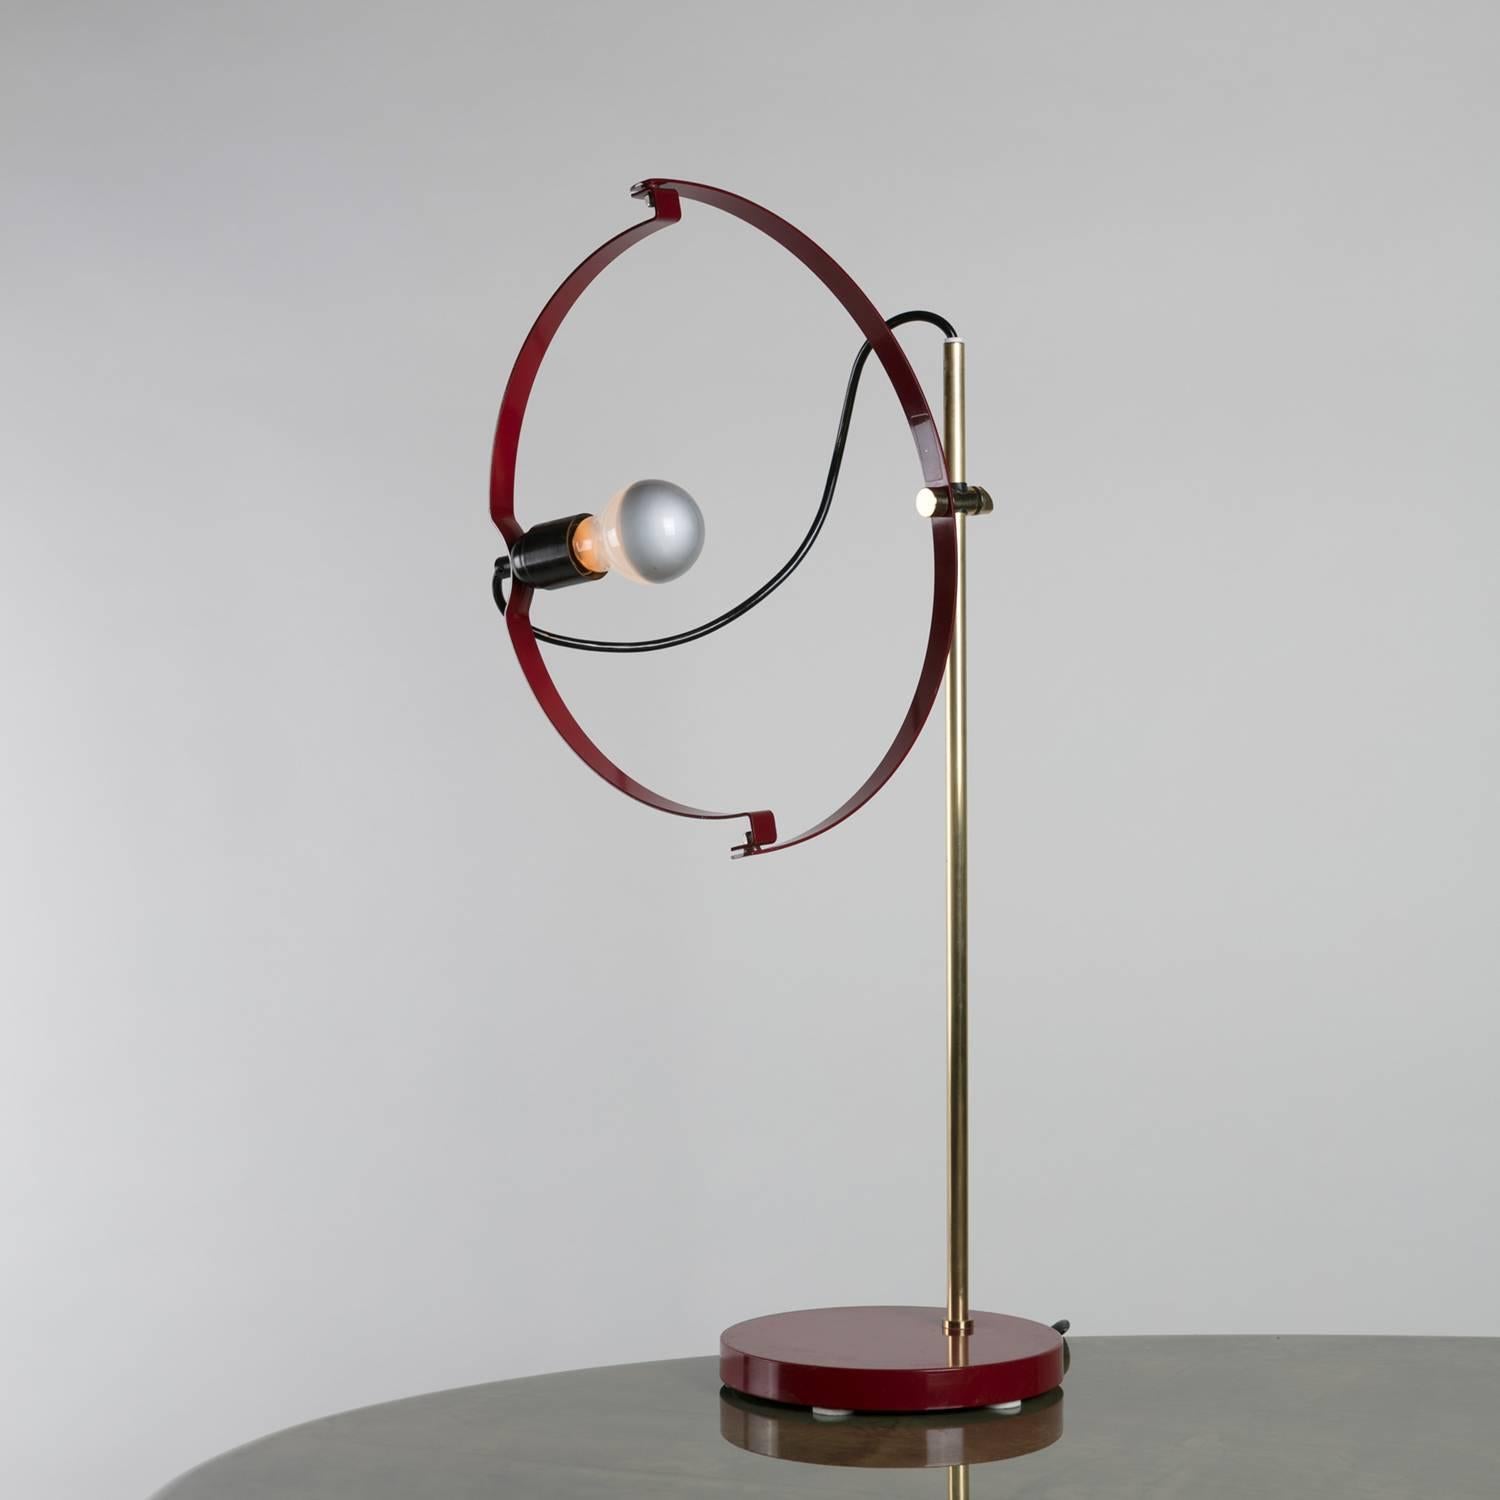 Remarquable lampe de table de Reggiani.
Des bras semi-circulaires tournants permettent de positionner librement la source lumineuse.